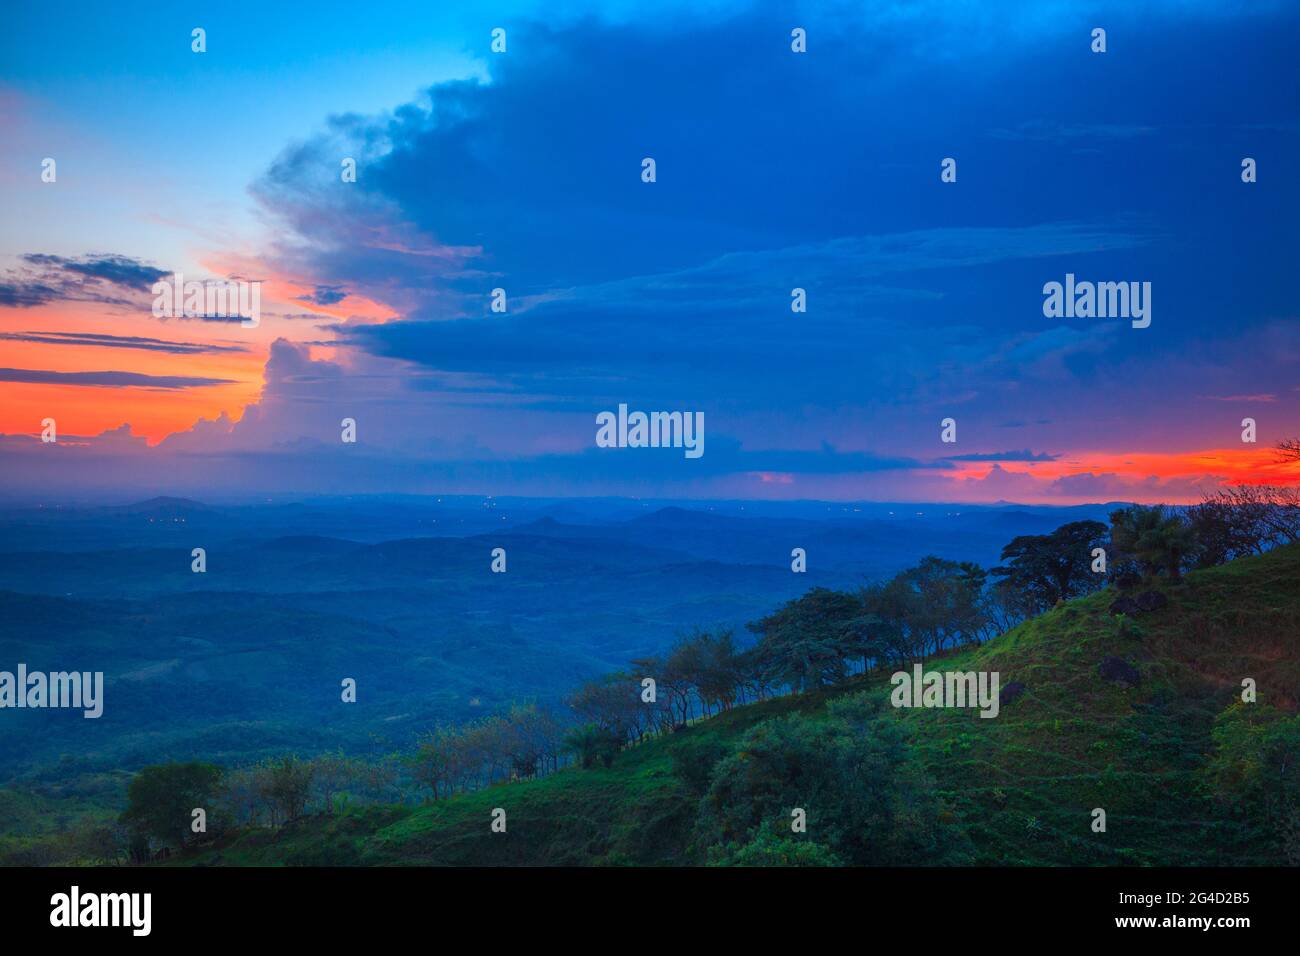 Panama paesaggio con bellissimo tramonto con cielo colorato e verde nei paesaggi collinari vicino a Ola nella provincia di Colle, Repubblica di Panama. Foto Stock